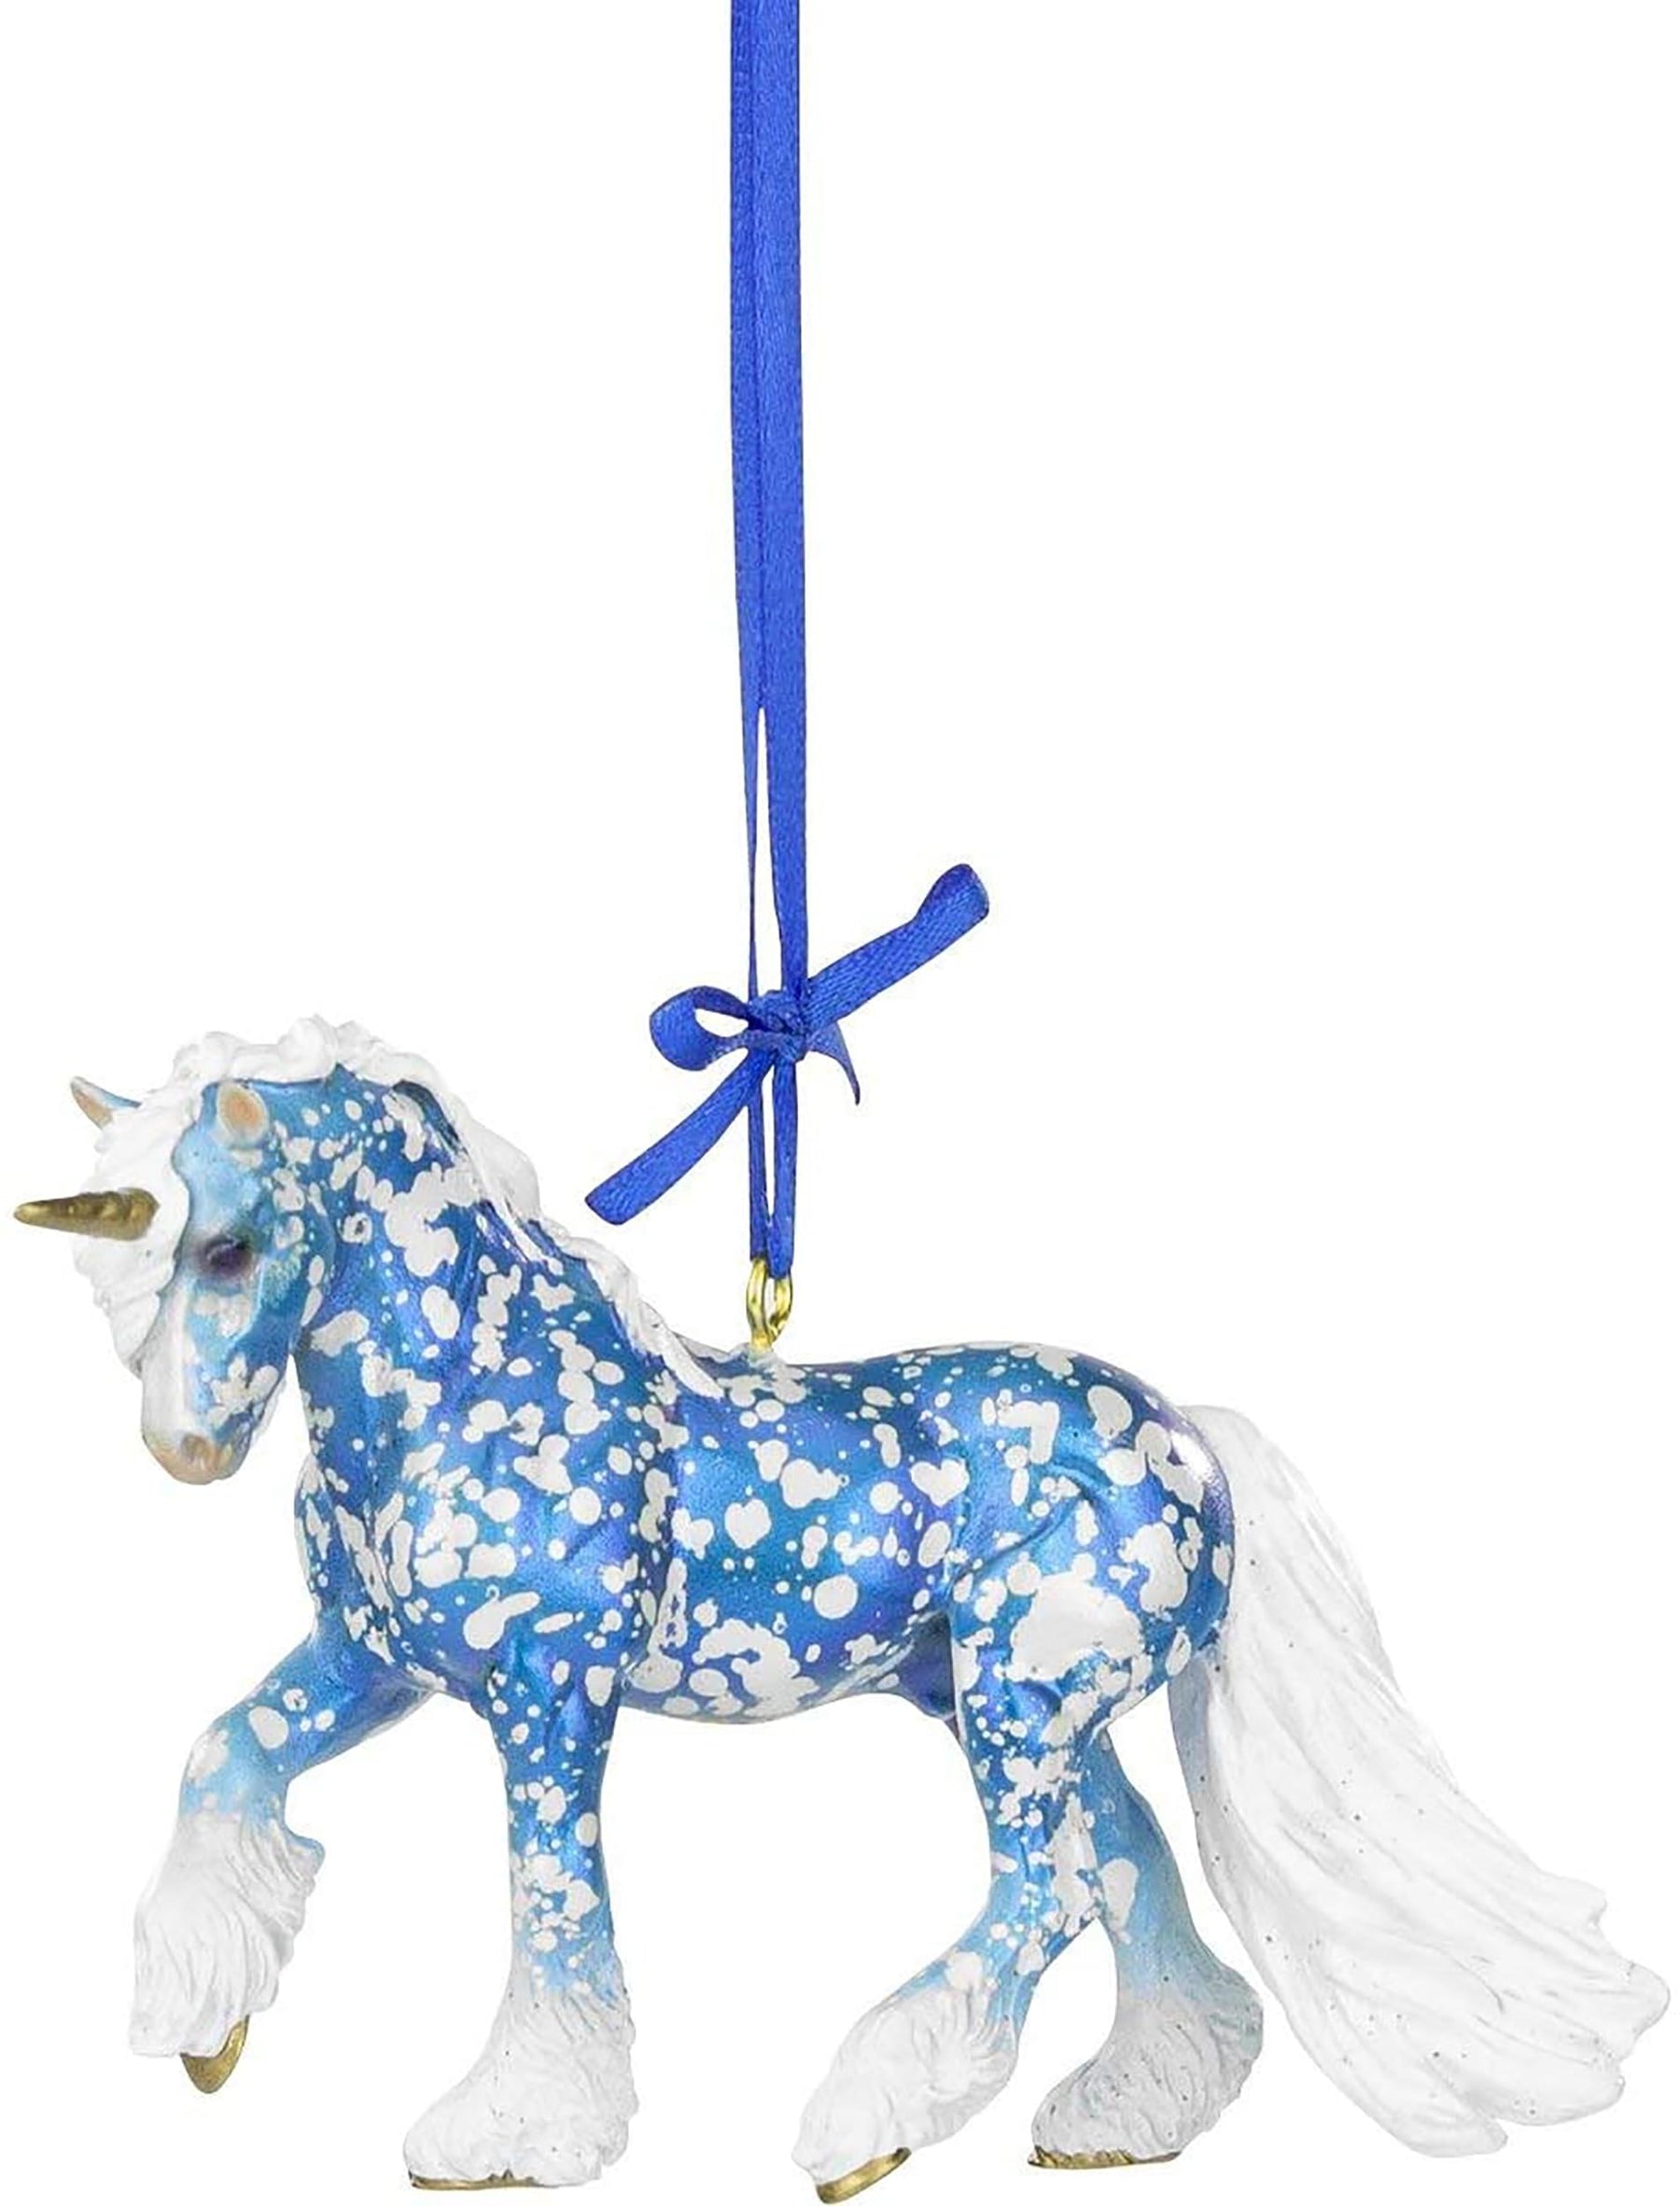 Breyer 2021 Holiday Unicorn Ornament | Eira